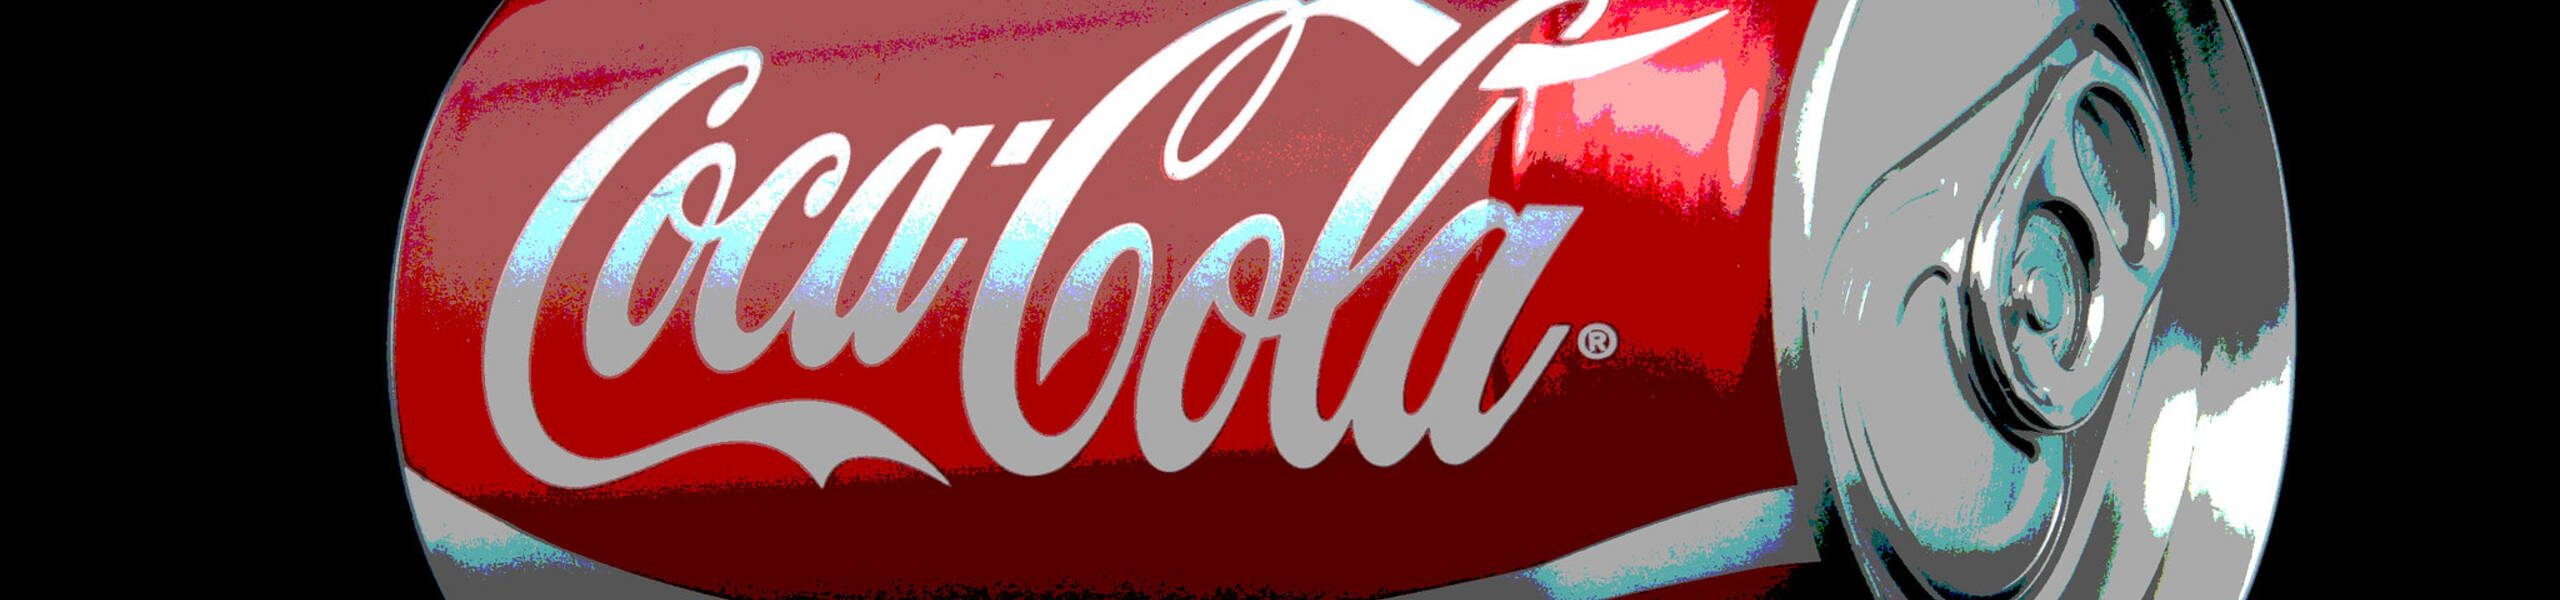 รายงานผลประกอบการ Coca-Cola ไตรมาส 2